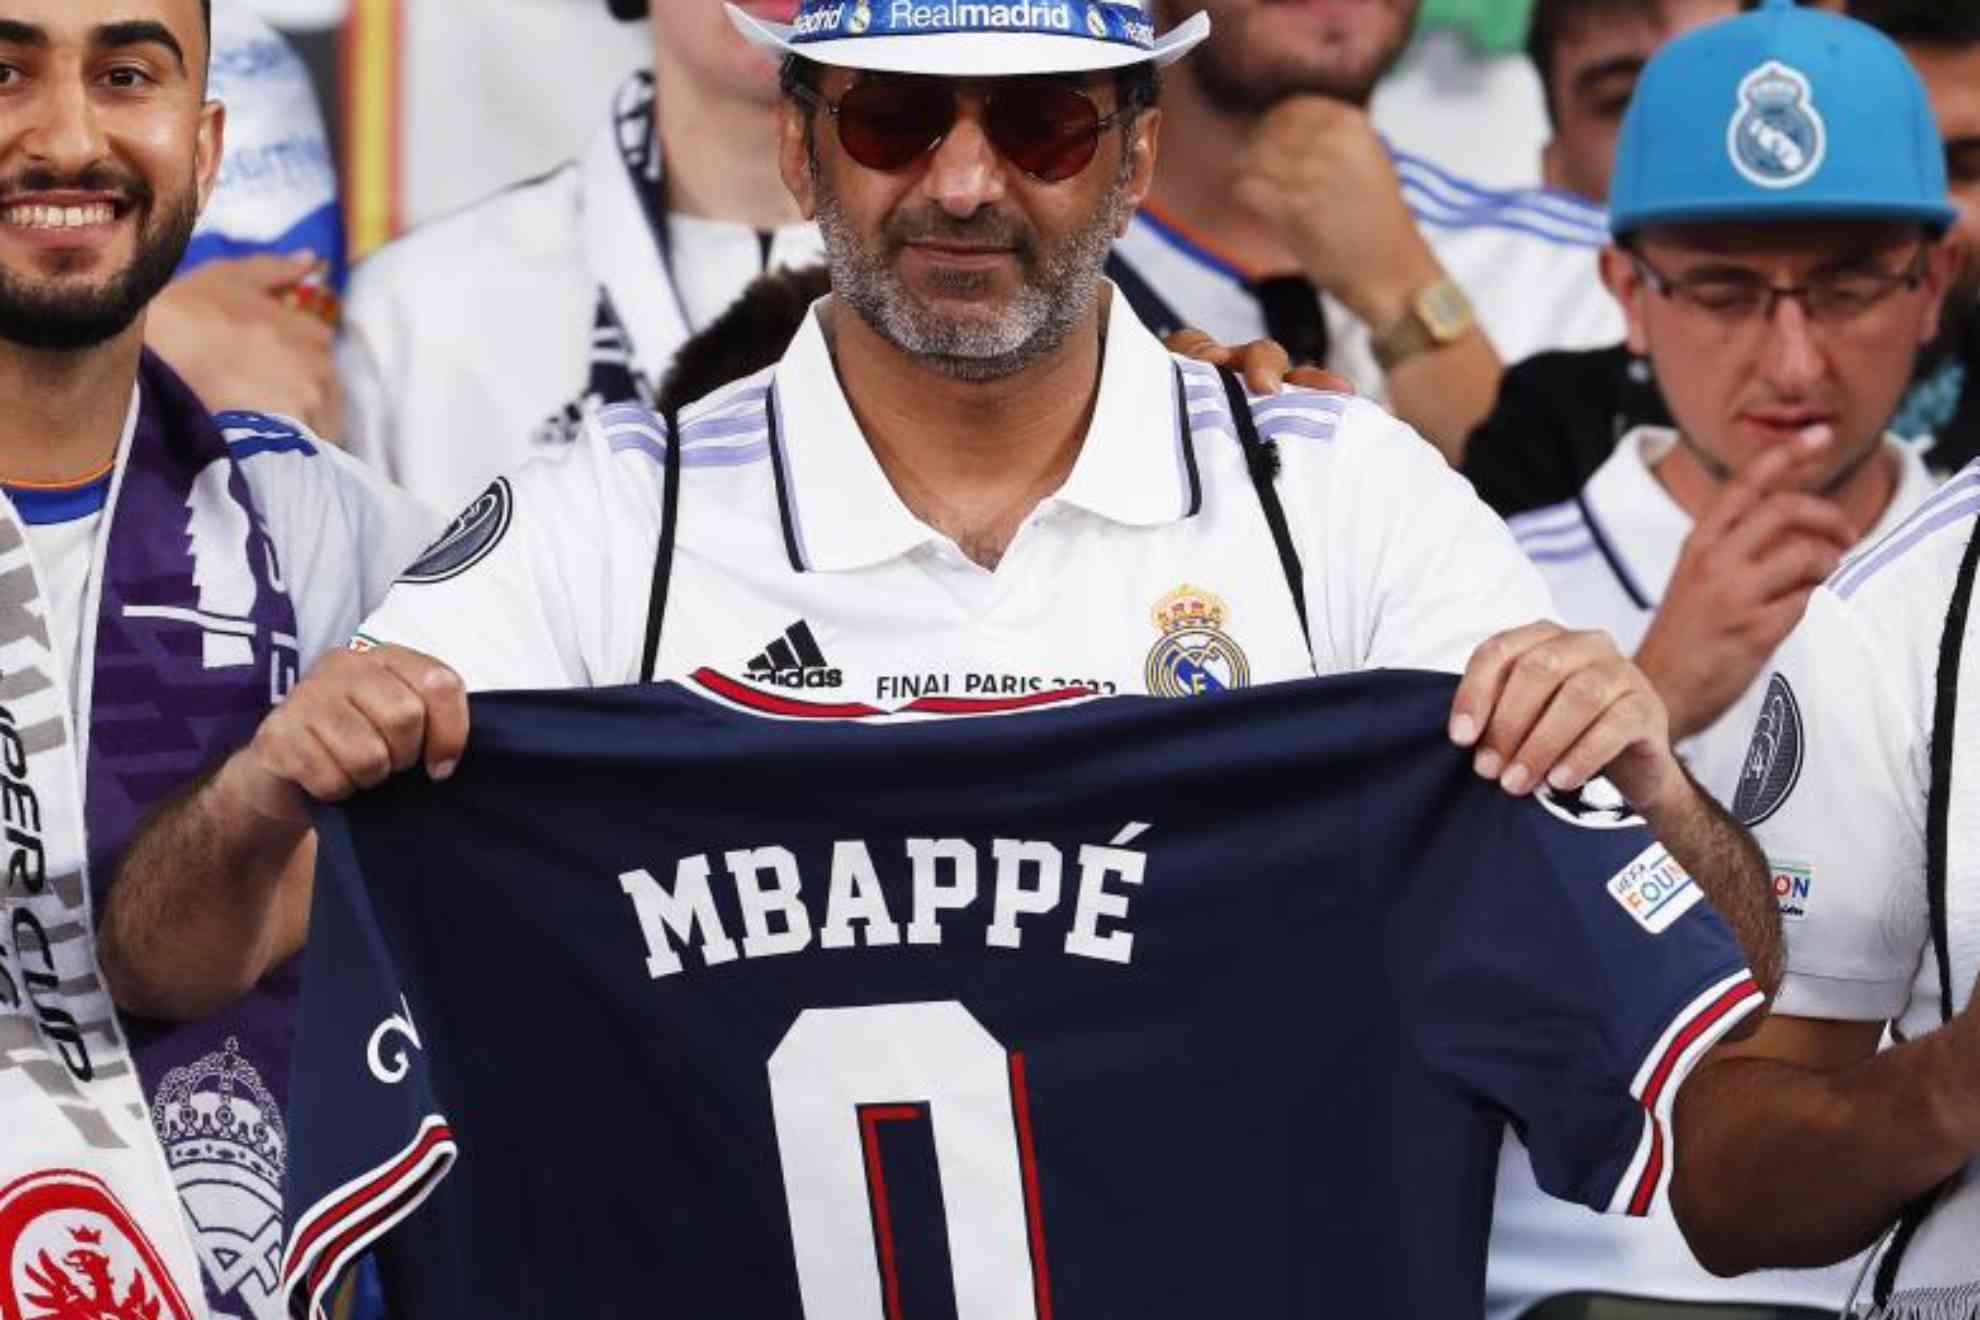 Mensaje a Mbappé en la grada del Olímpico de Helsinki: 0 Champions League